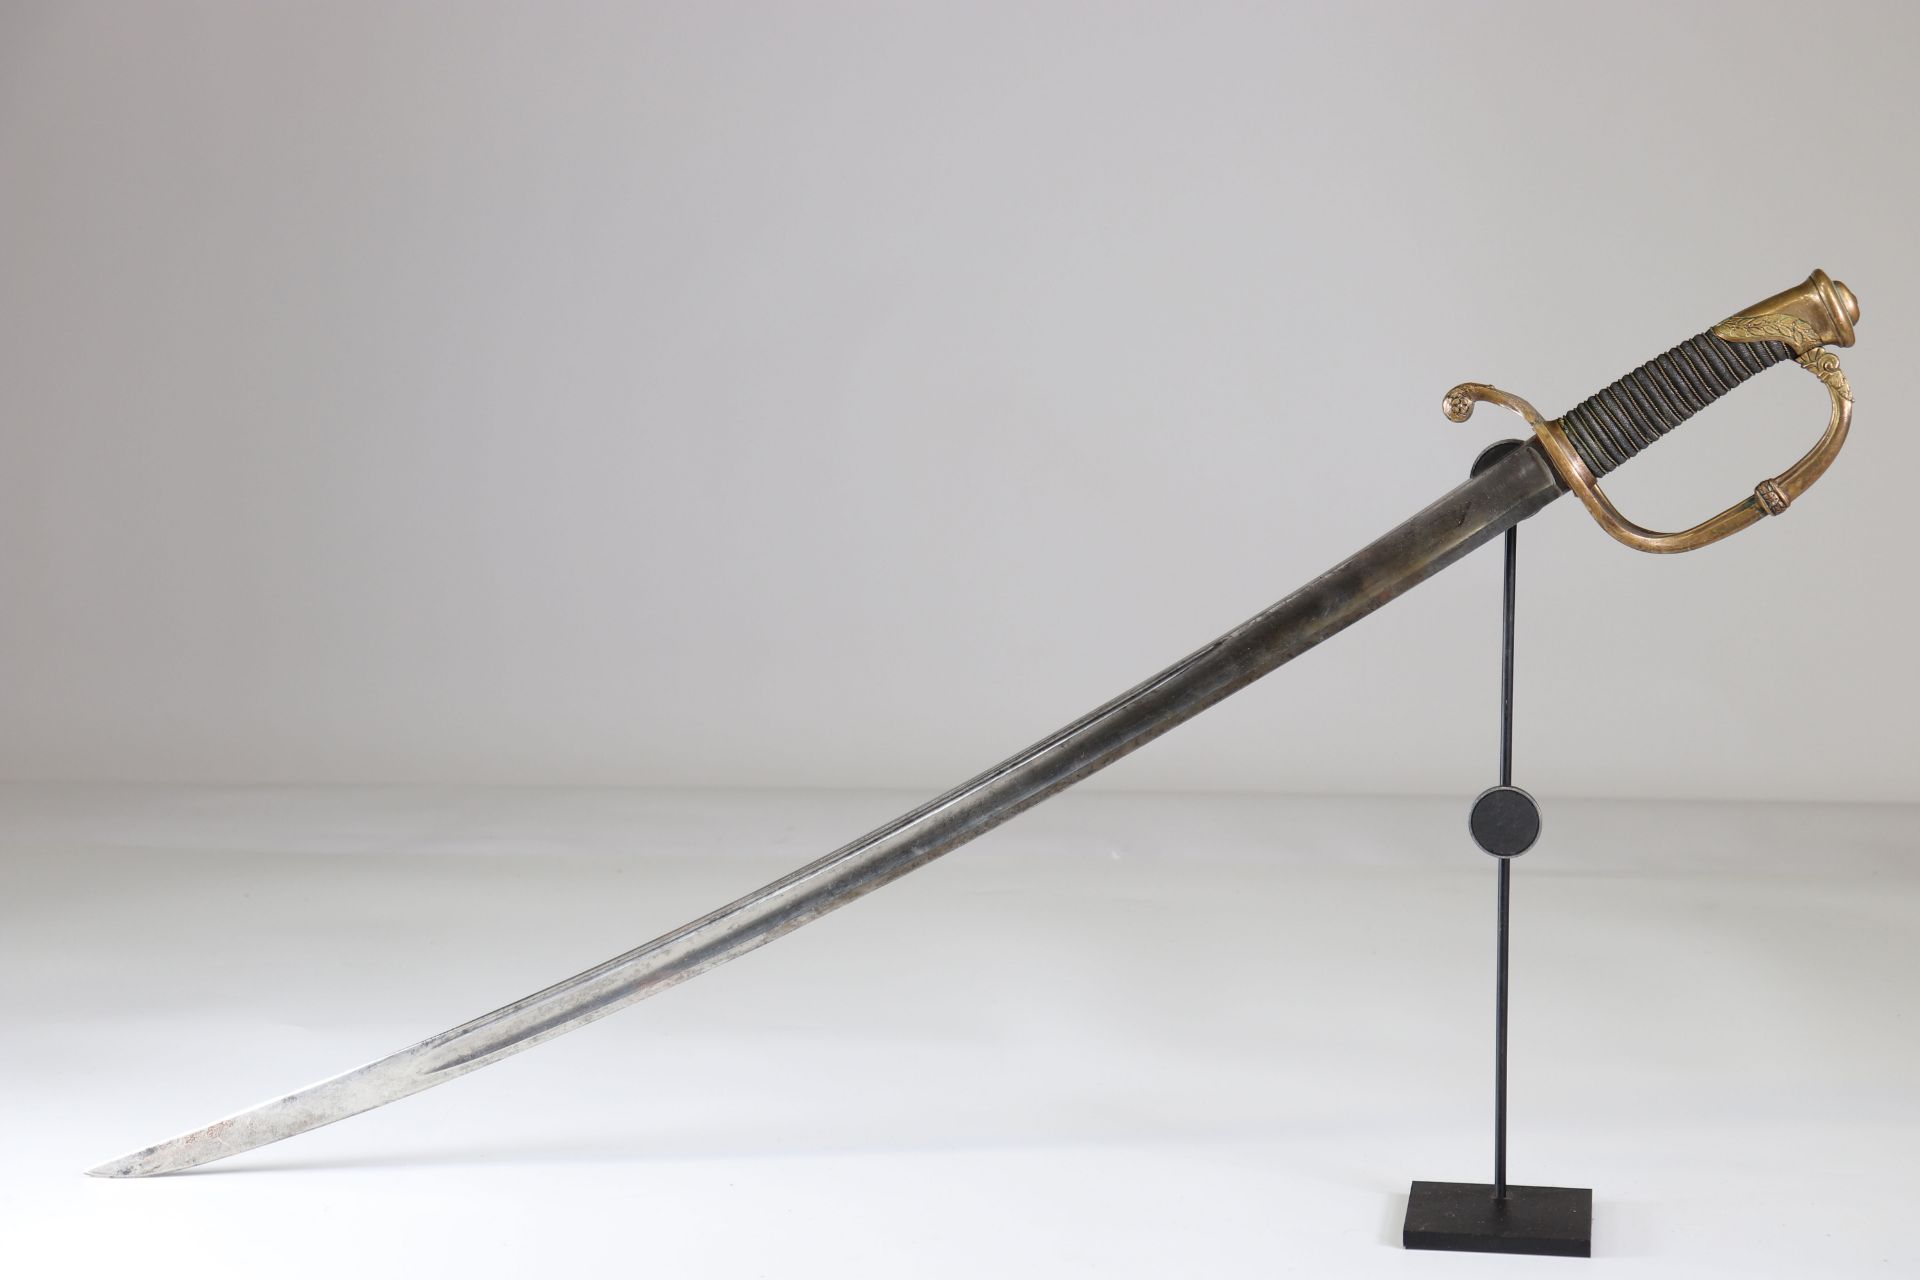 French officer saber, Klingenthal, 1834